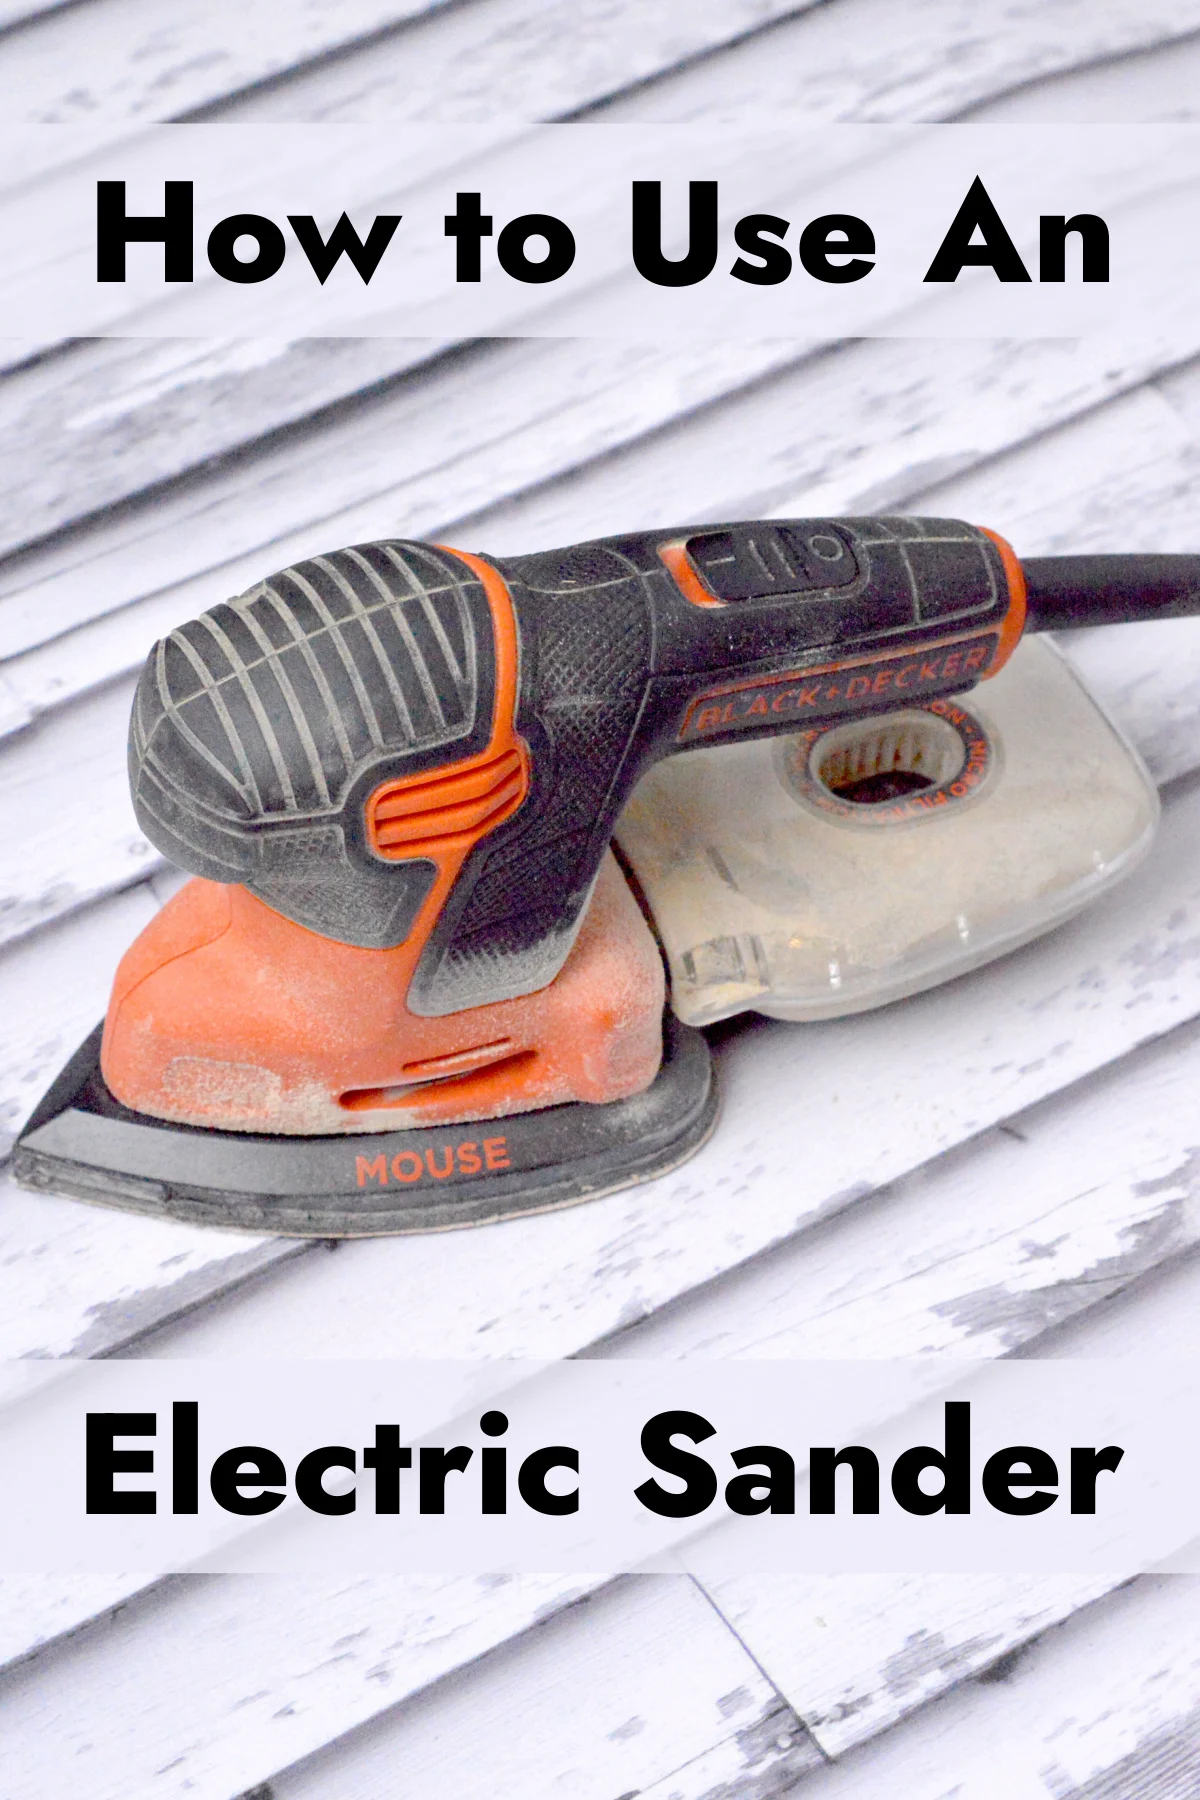 https://diycandy.b-cdn.net/wp-content/uploads/2021/01/How-to-Use-an-Electric-Sander.jpg.webp